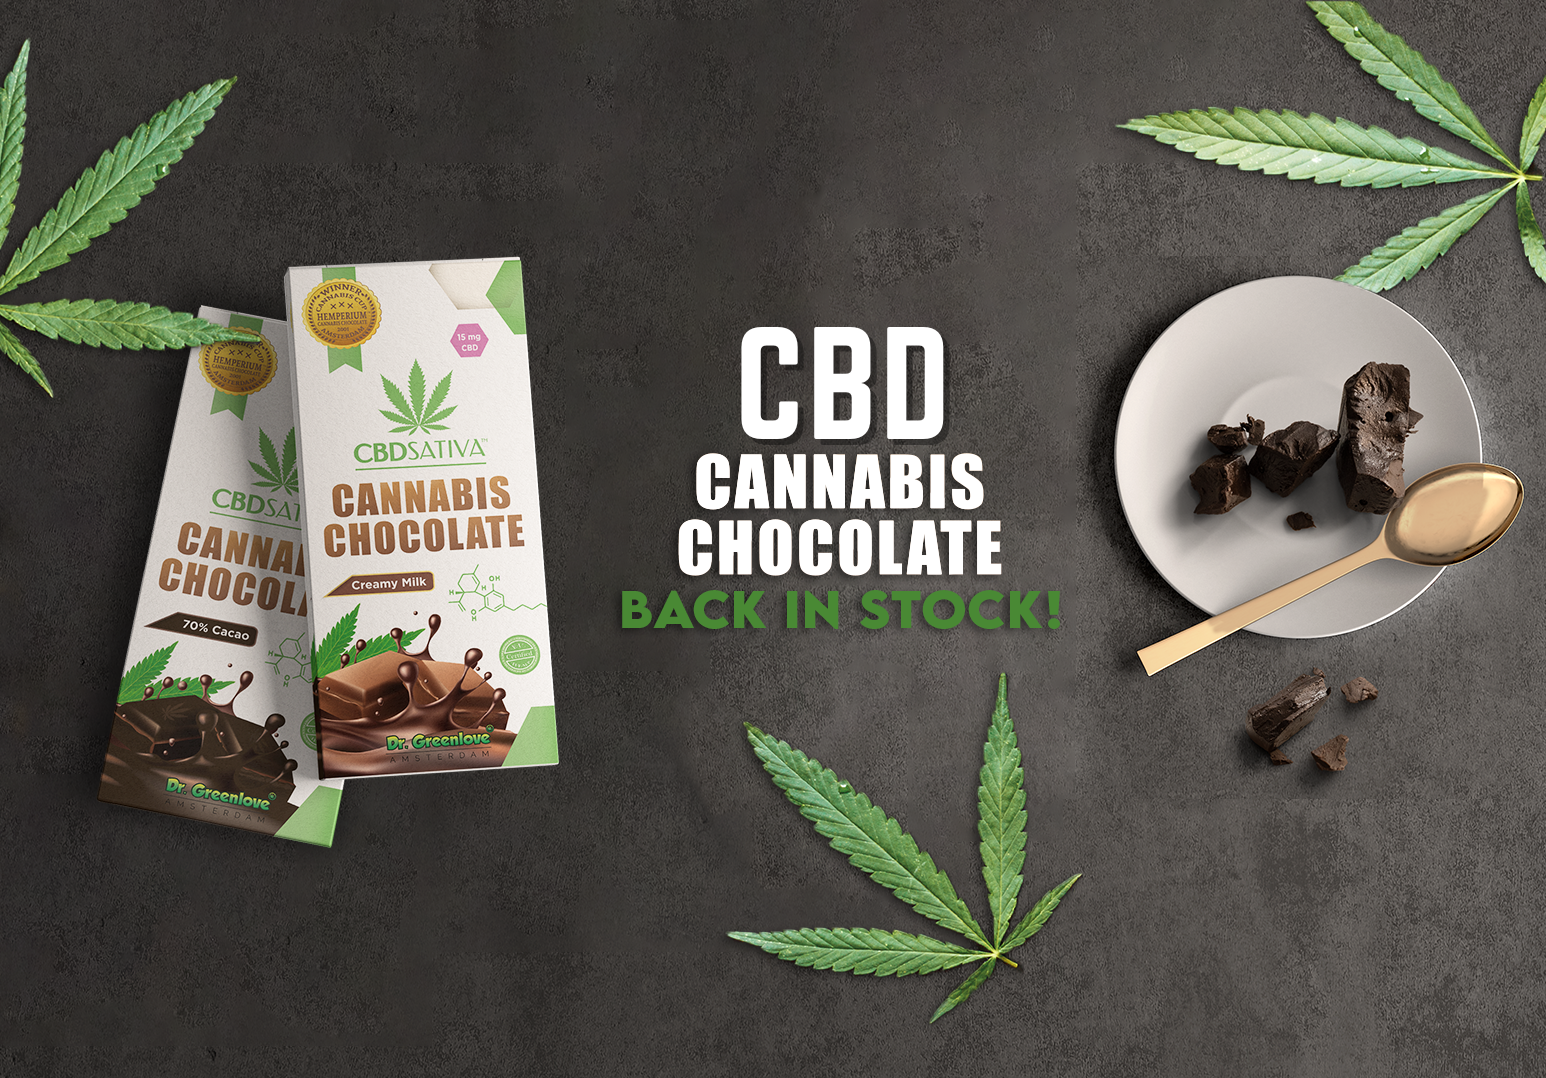 CBD Cannabis Chocolate from CBD Sativa